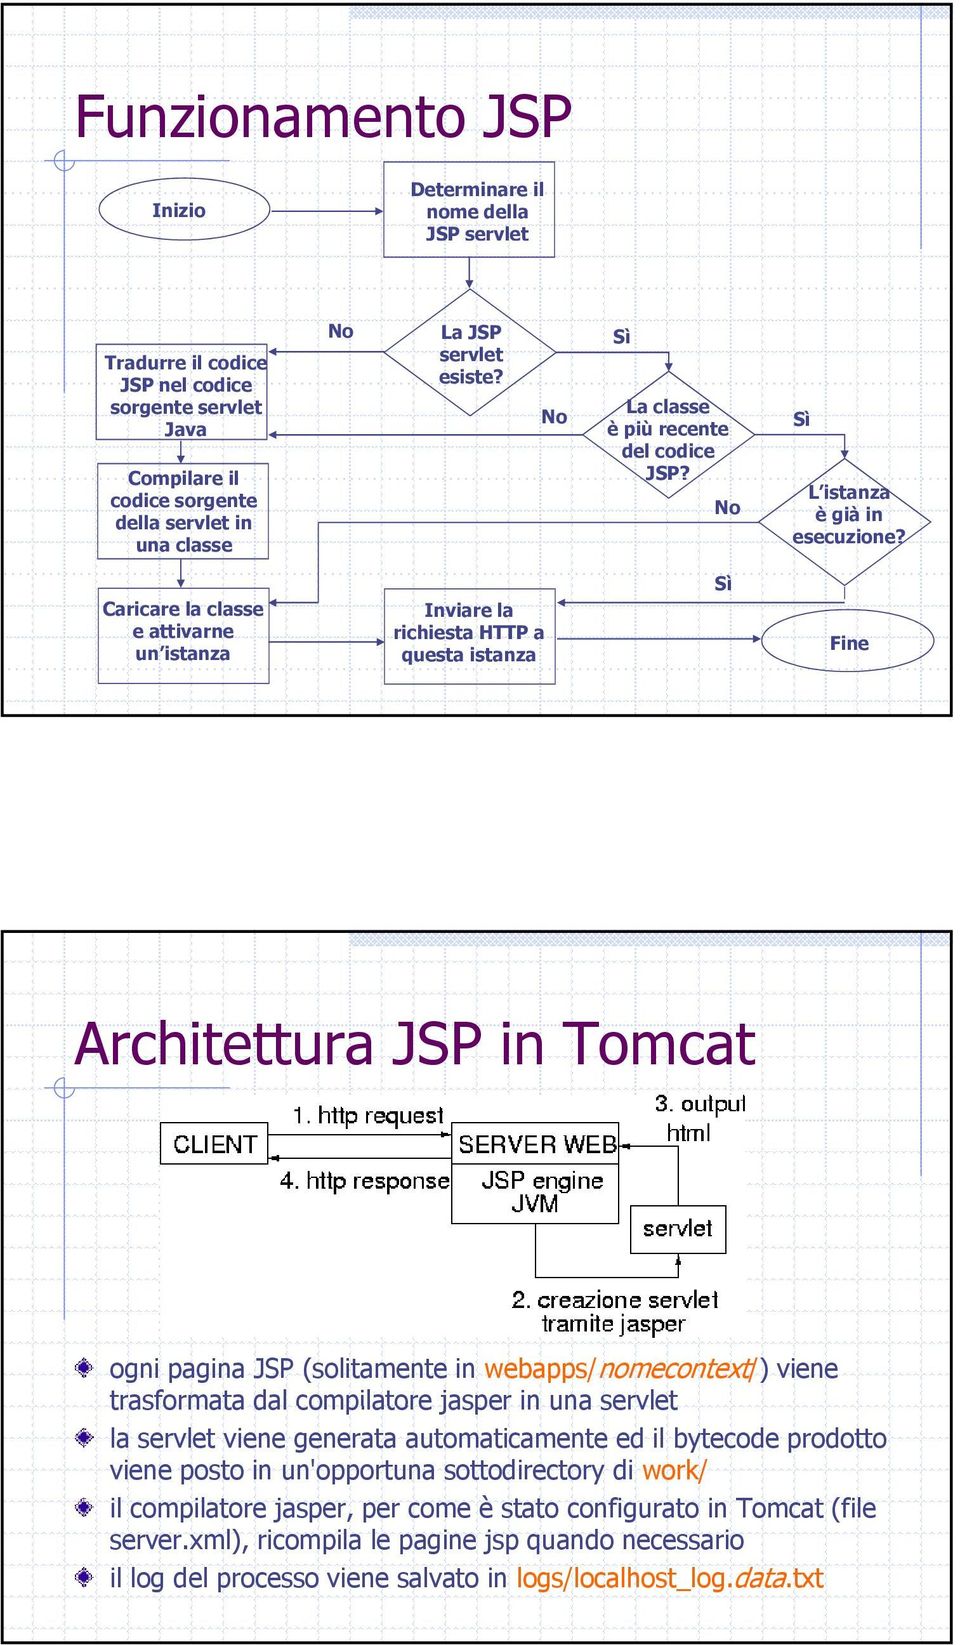 Caricare la classe e attivarne un istanza Inviare la richiesta HTTP a questa istanza Sì Fine Architettura JSP in Tomcat ogni pagina JSP (solitamente in webapps/nomecontext/) viene trasformata dal